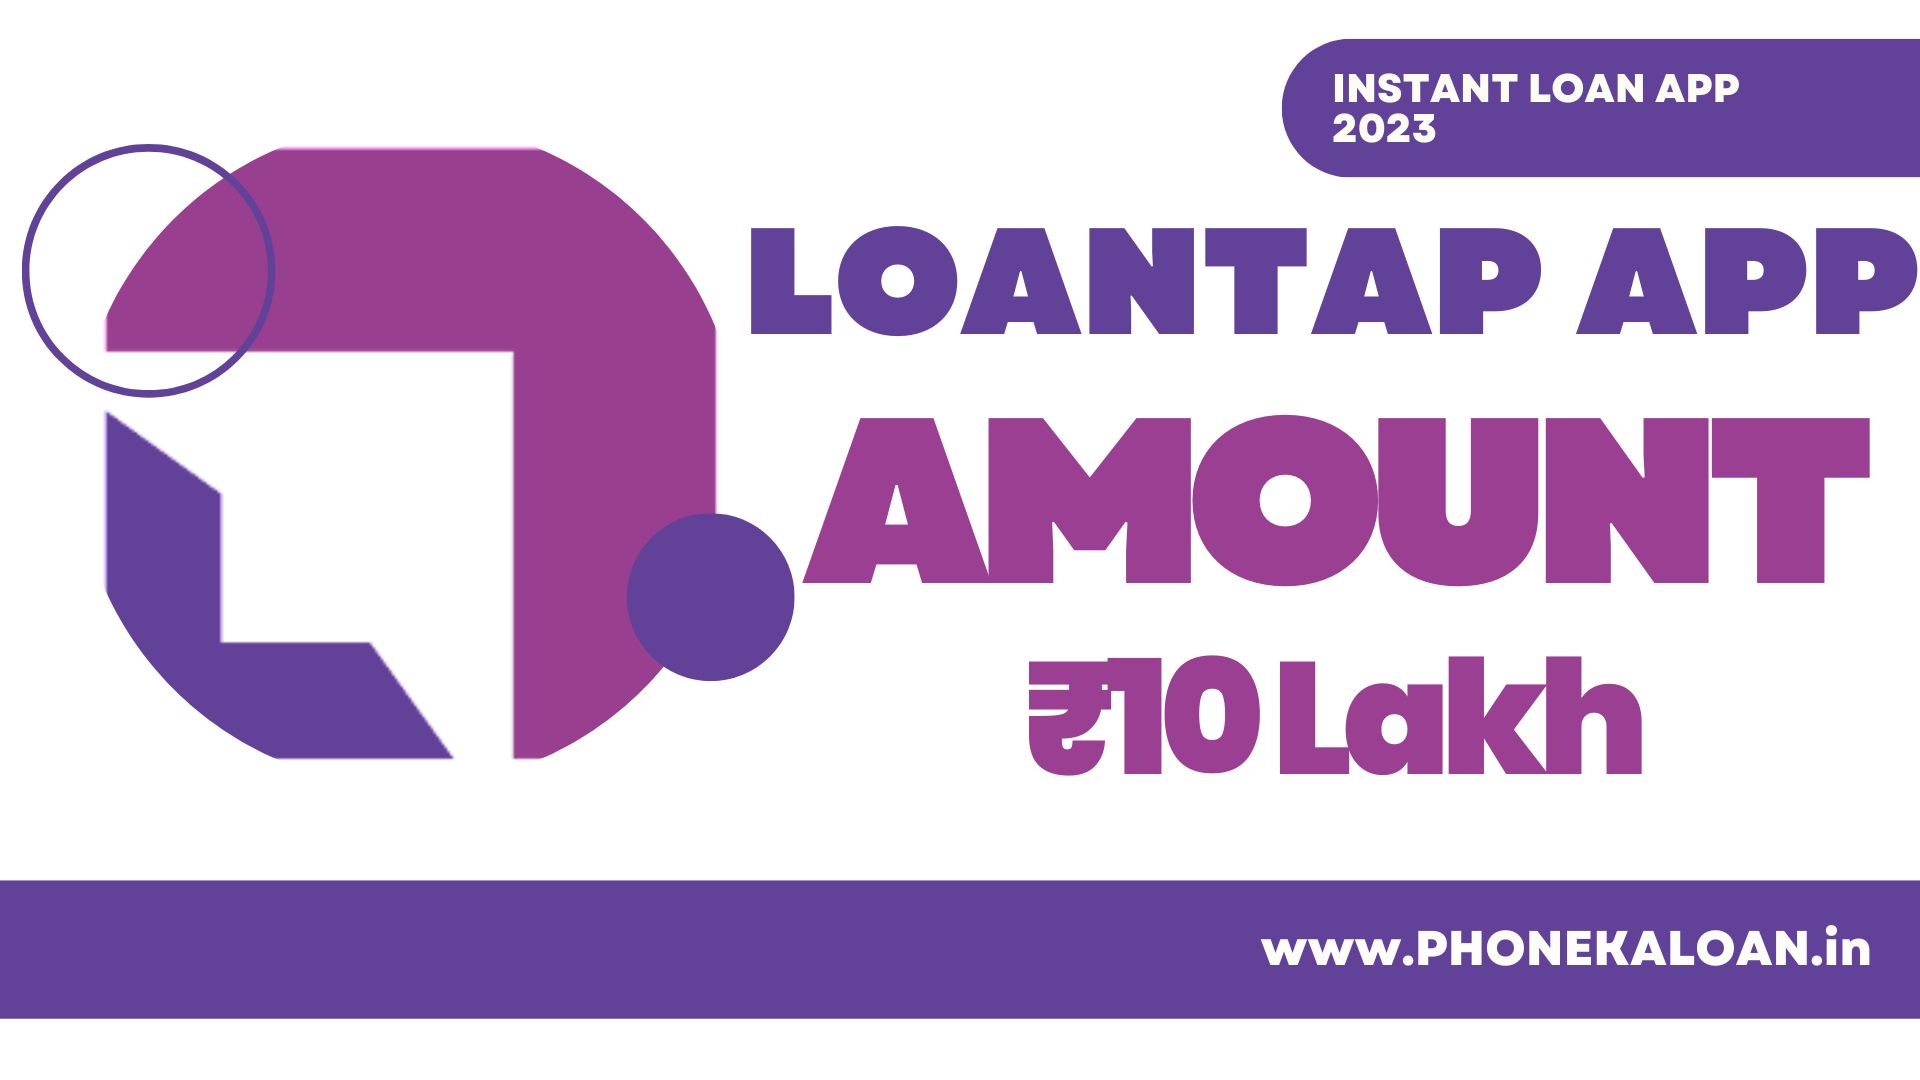 LoanTap Loan App Loan Amount